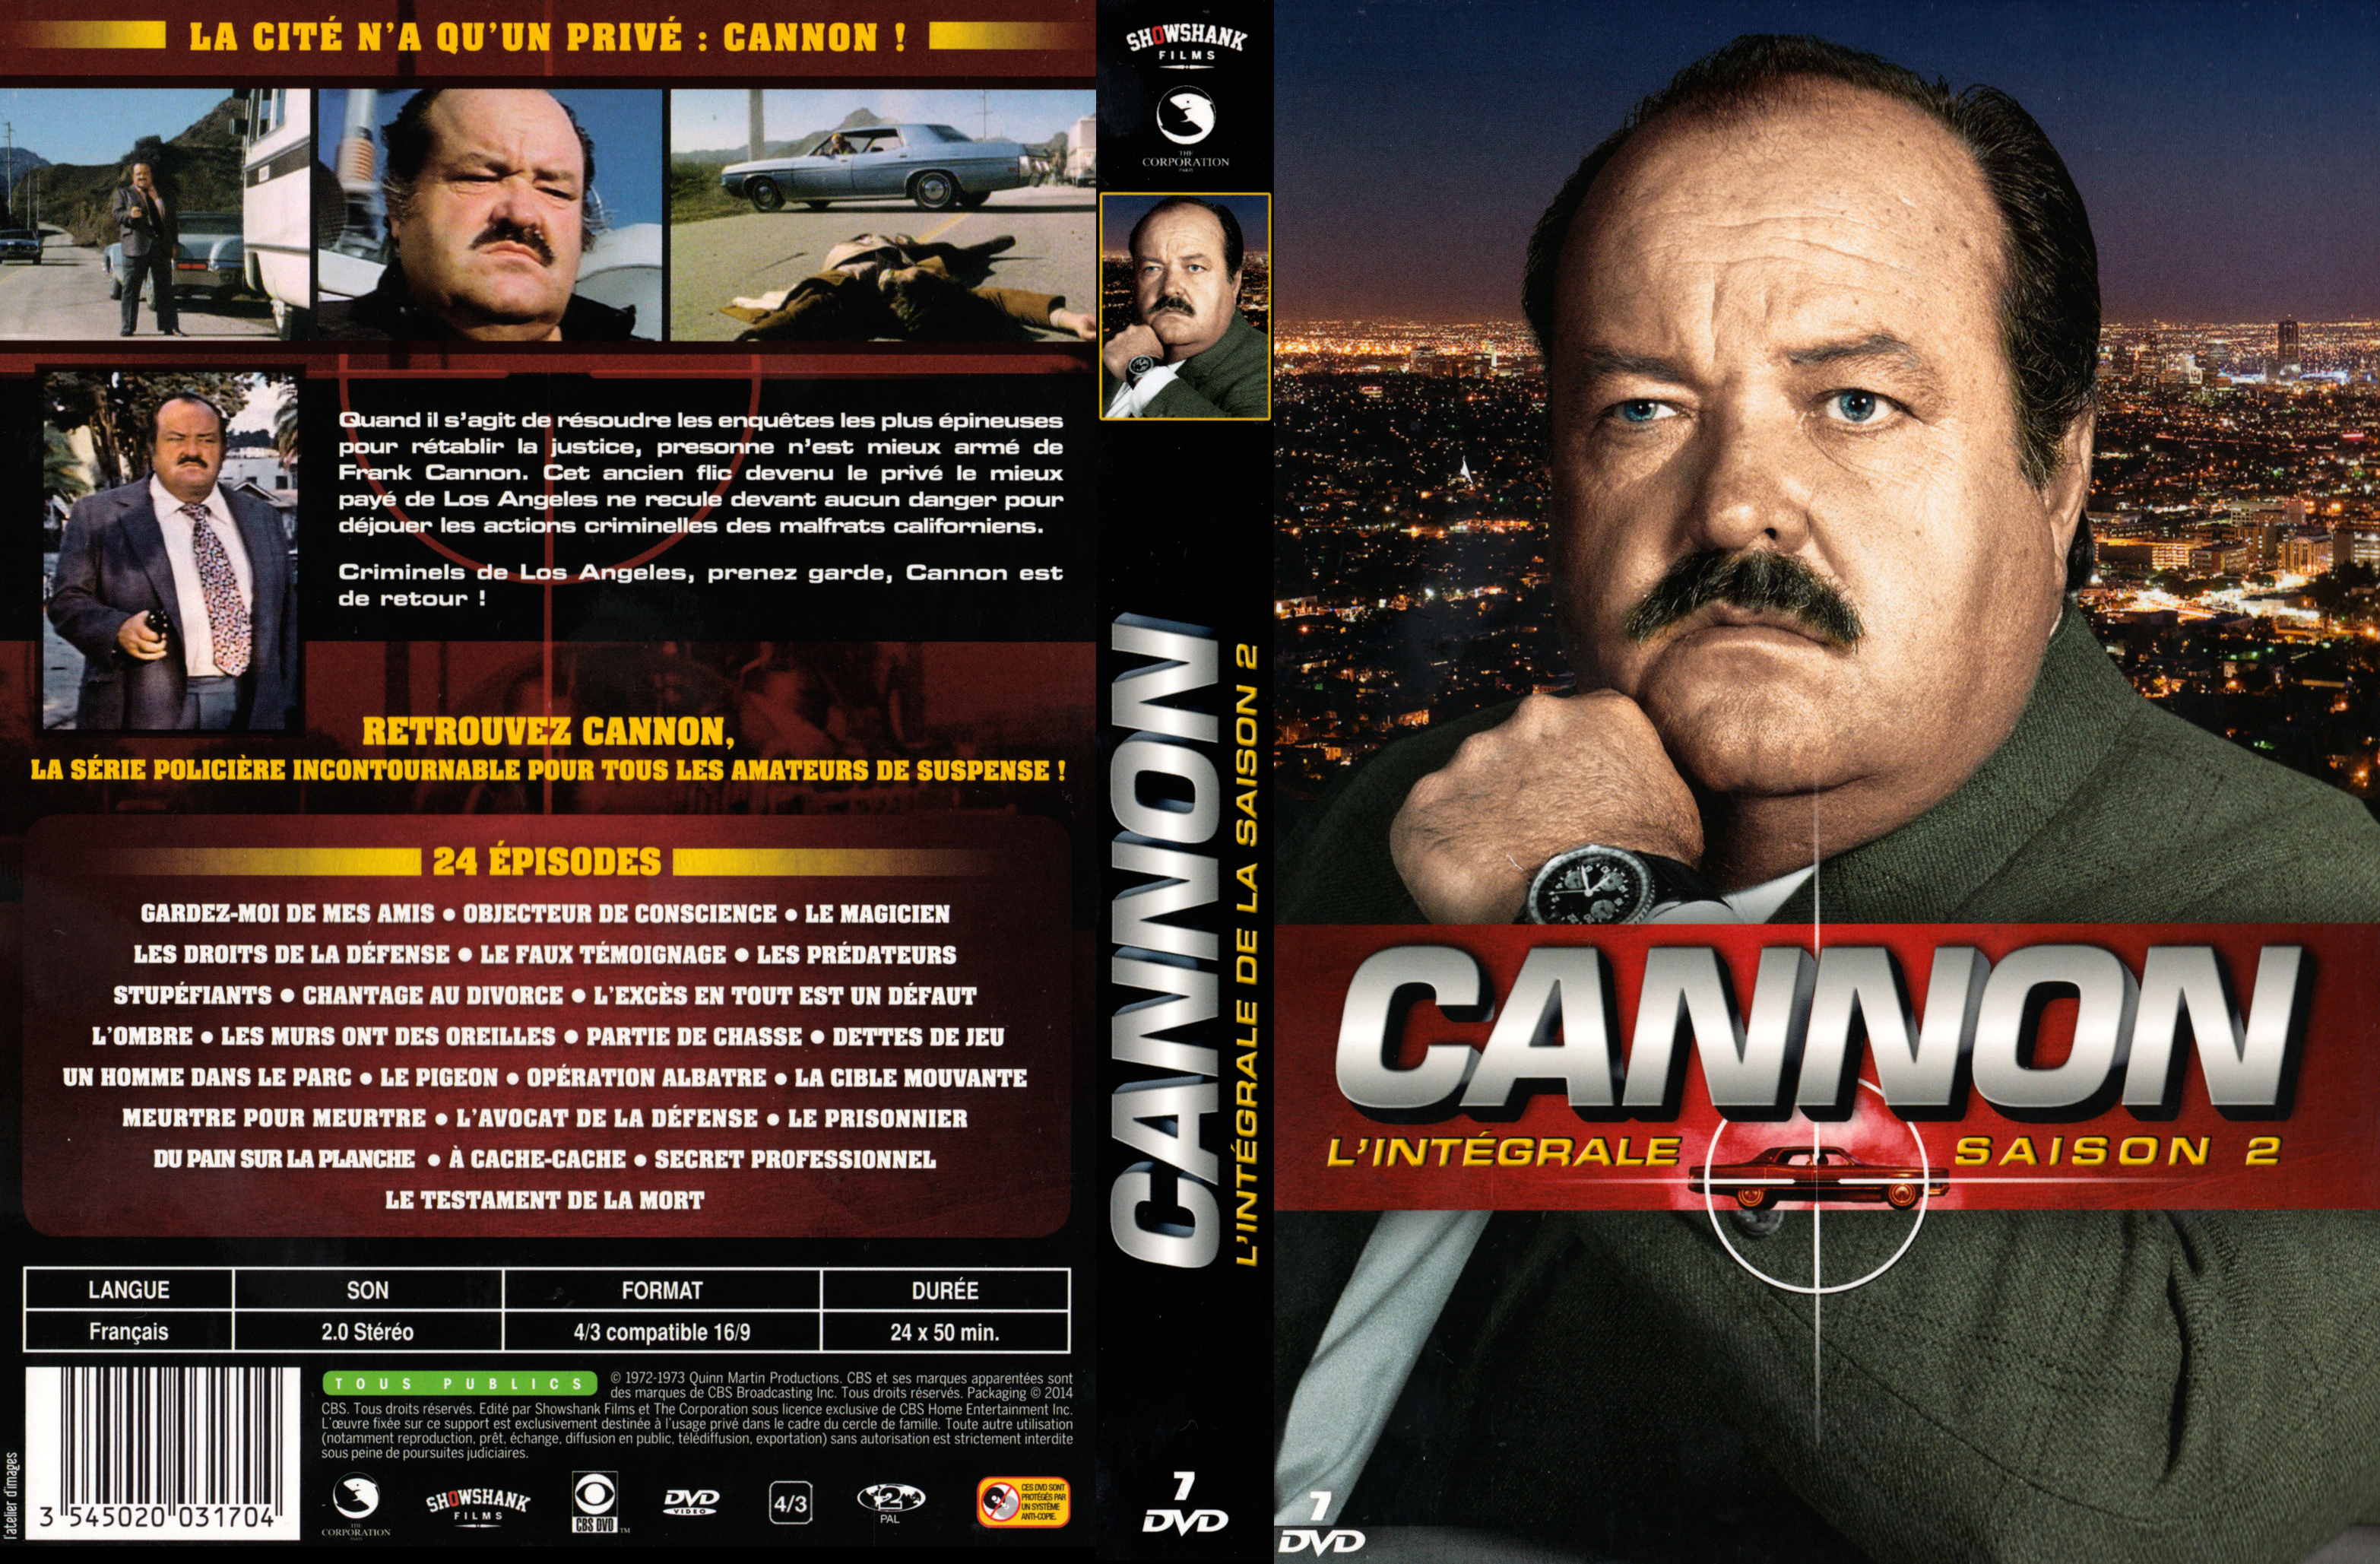 Jaquette DVD Cannon Saison 2